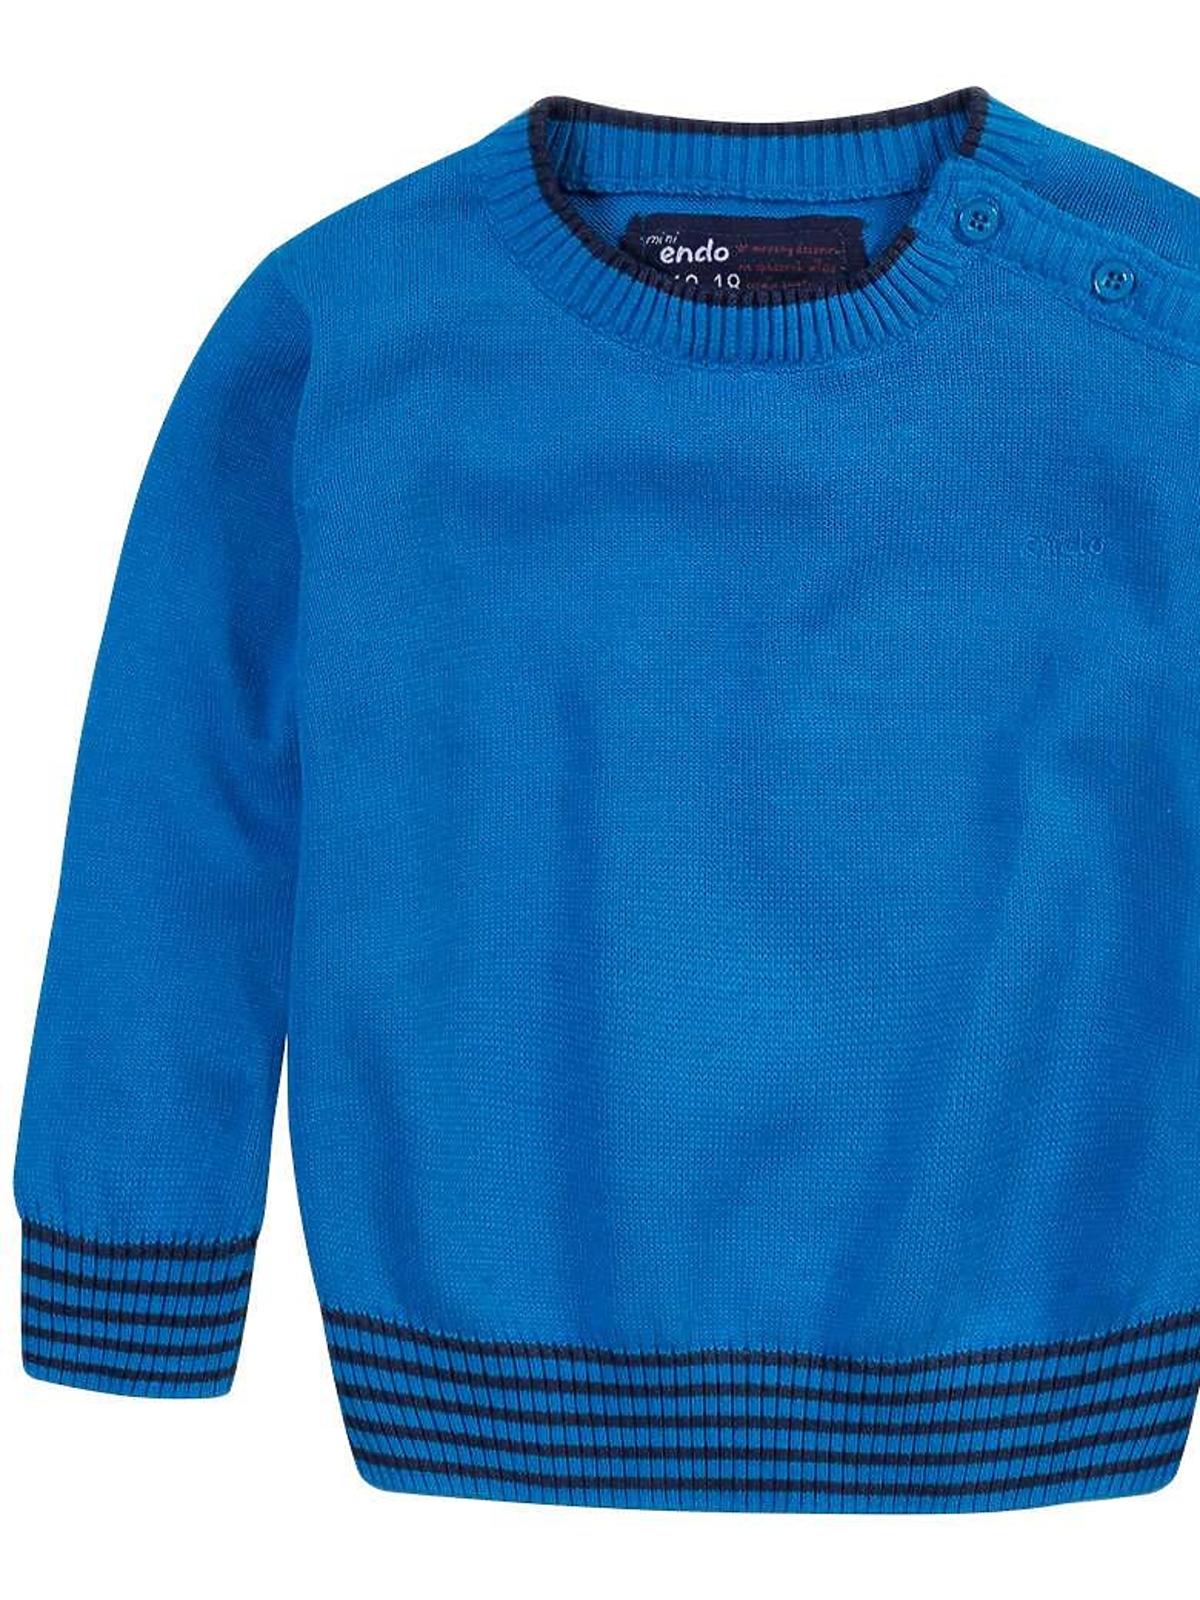 klasyczny sweterek dla chłopca, sweterek endo, ubranka dla chłopca na jesień